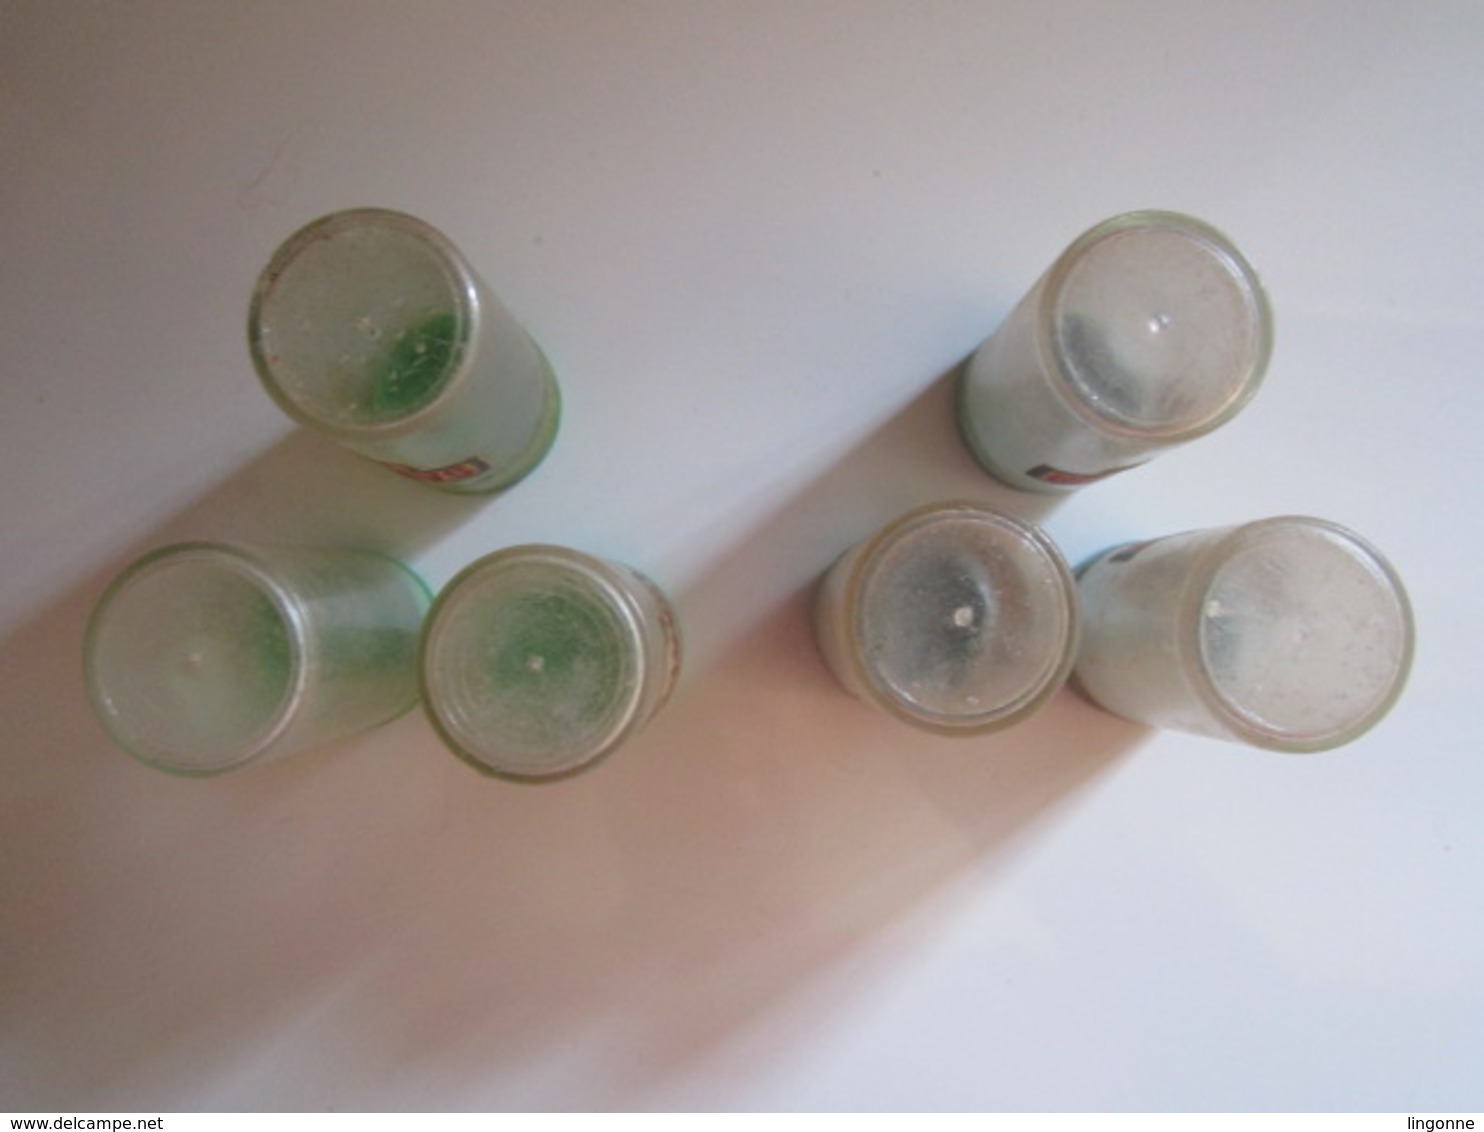 6 Anciennes boites en tube plastique de marque SANPEUR 3 BLEUS 3 VERTES (Boite pour ?? chasseur ? Chasse ?) Haut 5,5 cm